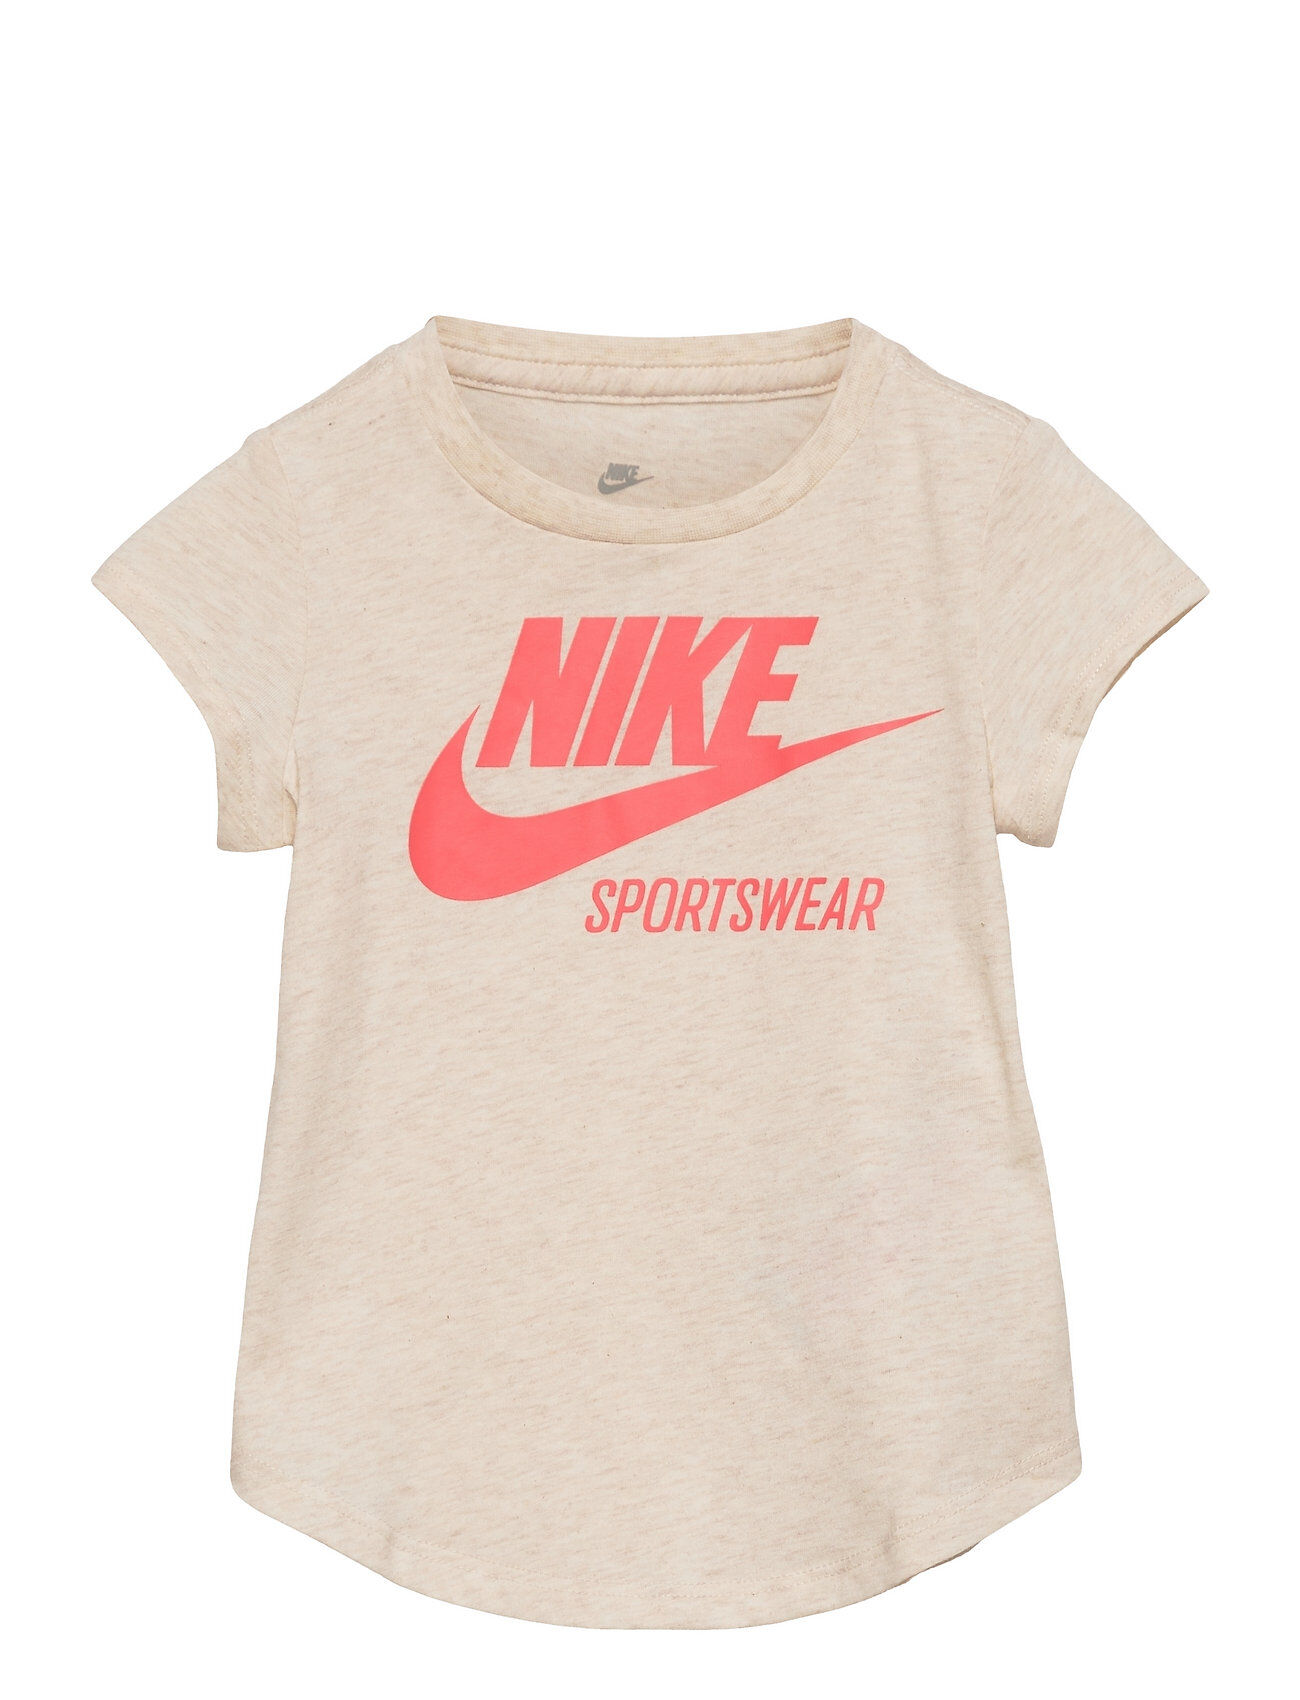 Nike Nkg Nike Sportswear T-shirts Short-sleeved Beige Nike